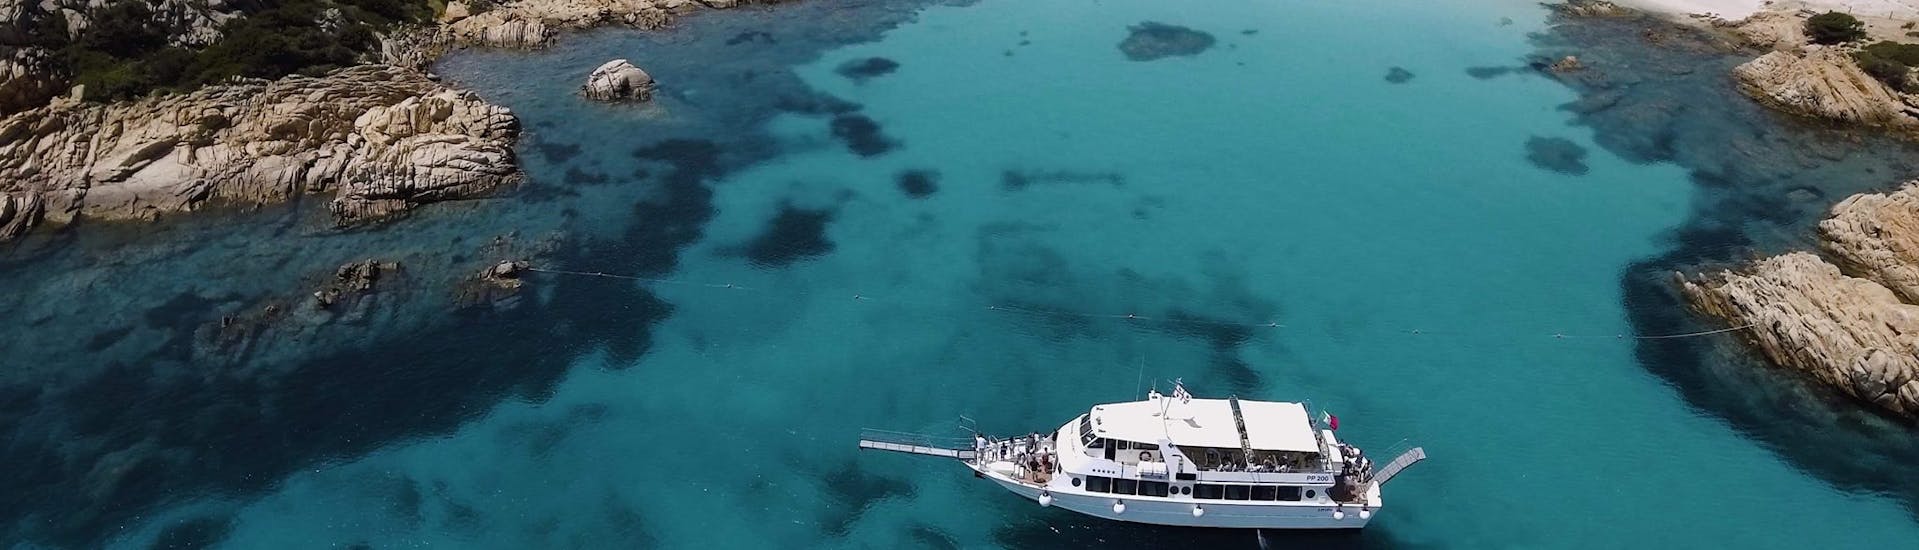 Während der Bootstour zu den 4 Inseln des Maddalena-Archipels ab Palau fährt ein schönes und geräumiges Boot durch die Bucht.